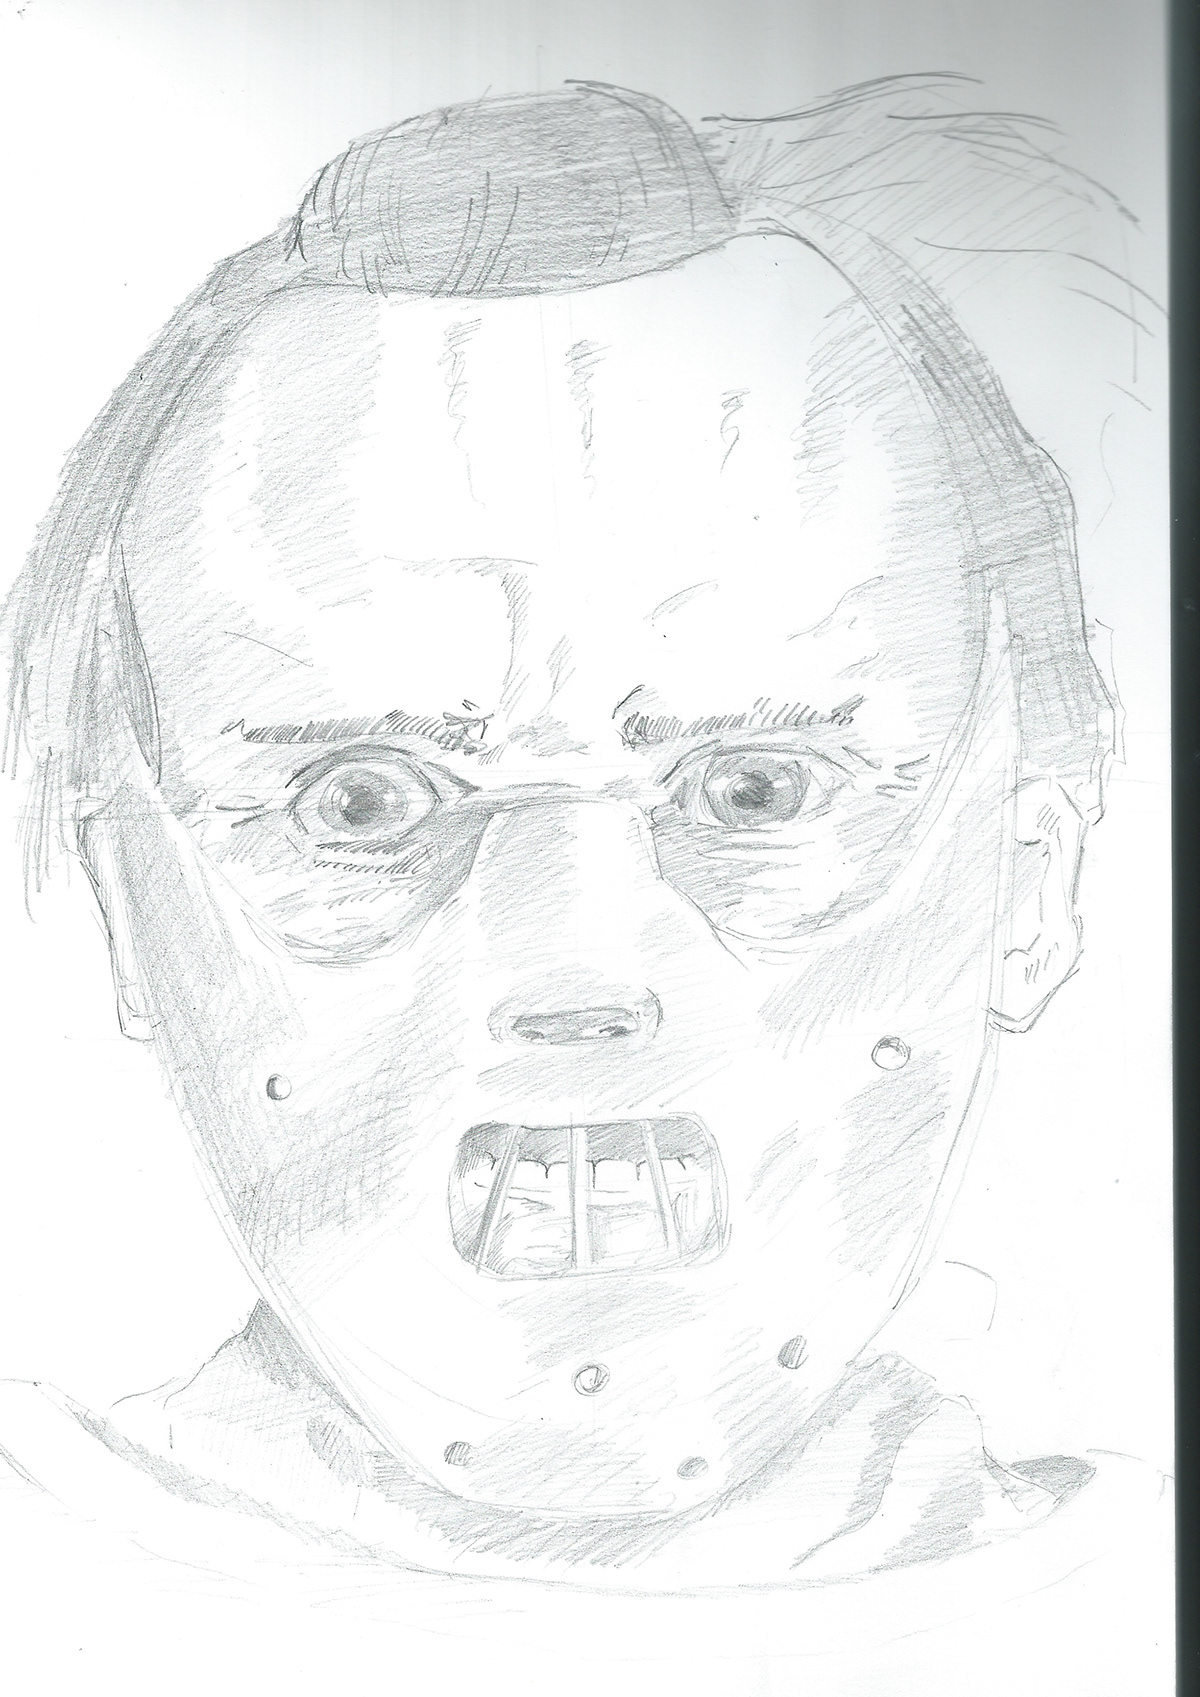 Scary portrait villain lecter Hannibal Lecter